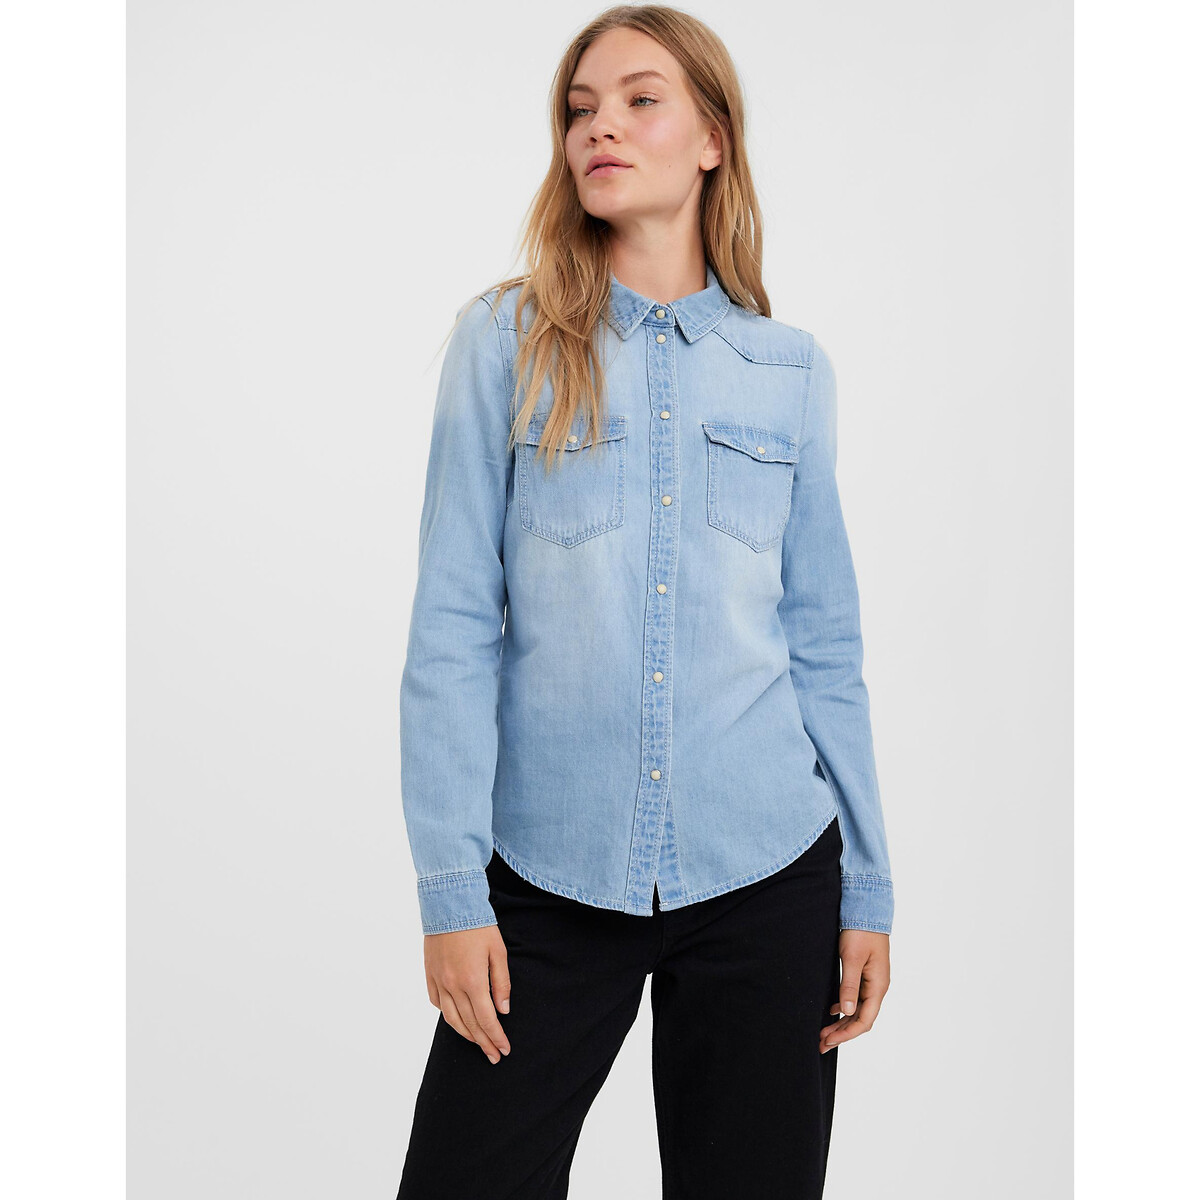 Рубашка Из джинсовой ткани S синий LaRedoute, размер S - фото 1